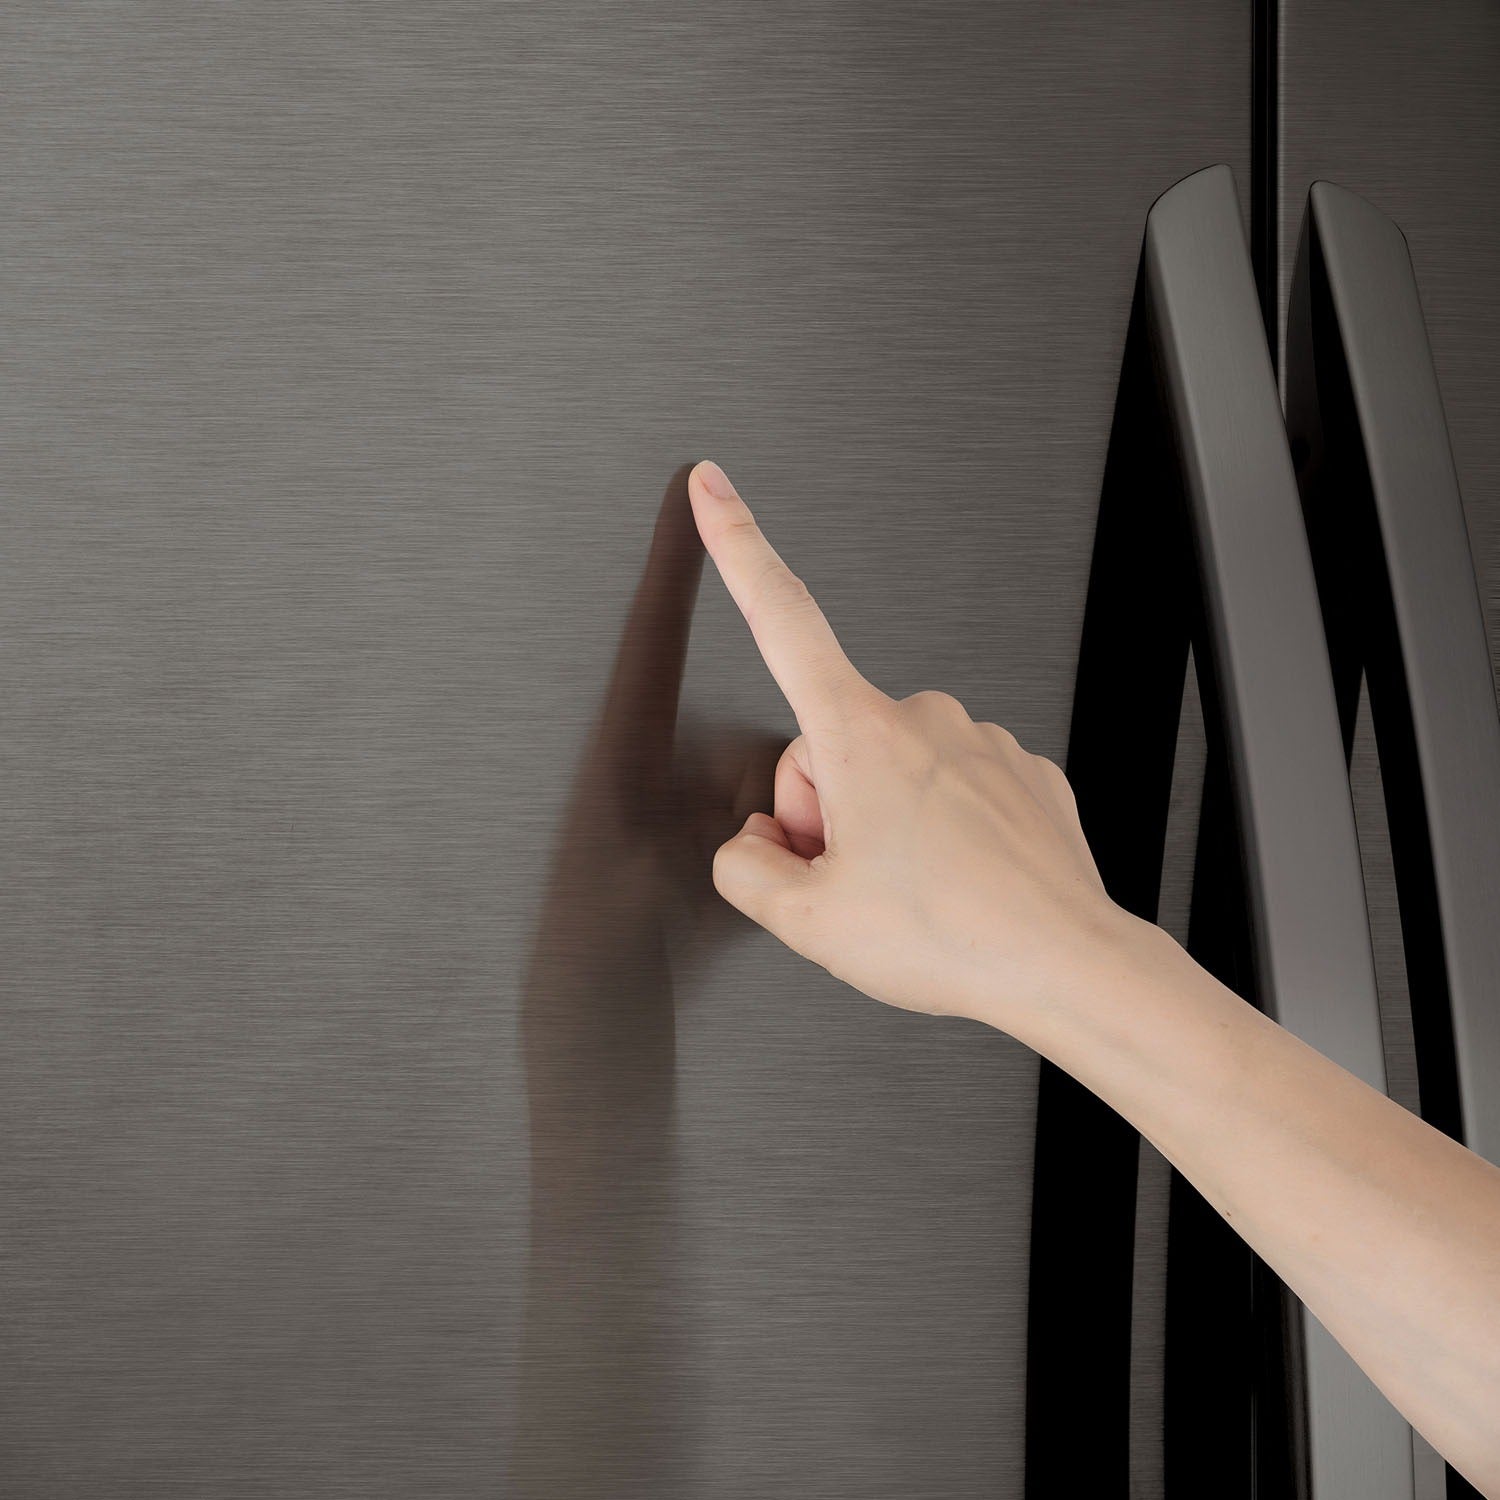 LG 36 Inch 3-Door French Door Refrigerator in Black Stainless Steel 22 Cu. Ft. (LFXC22526D)